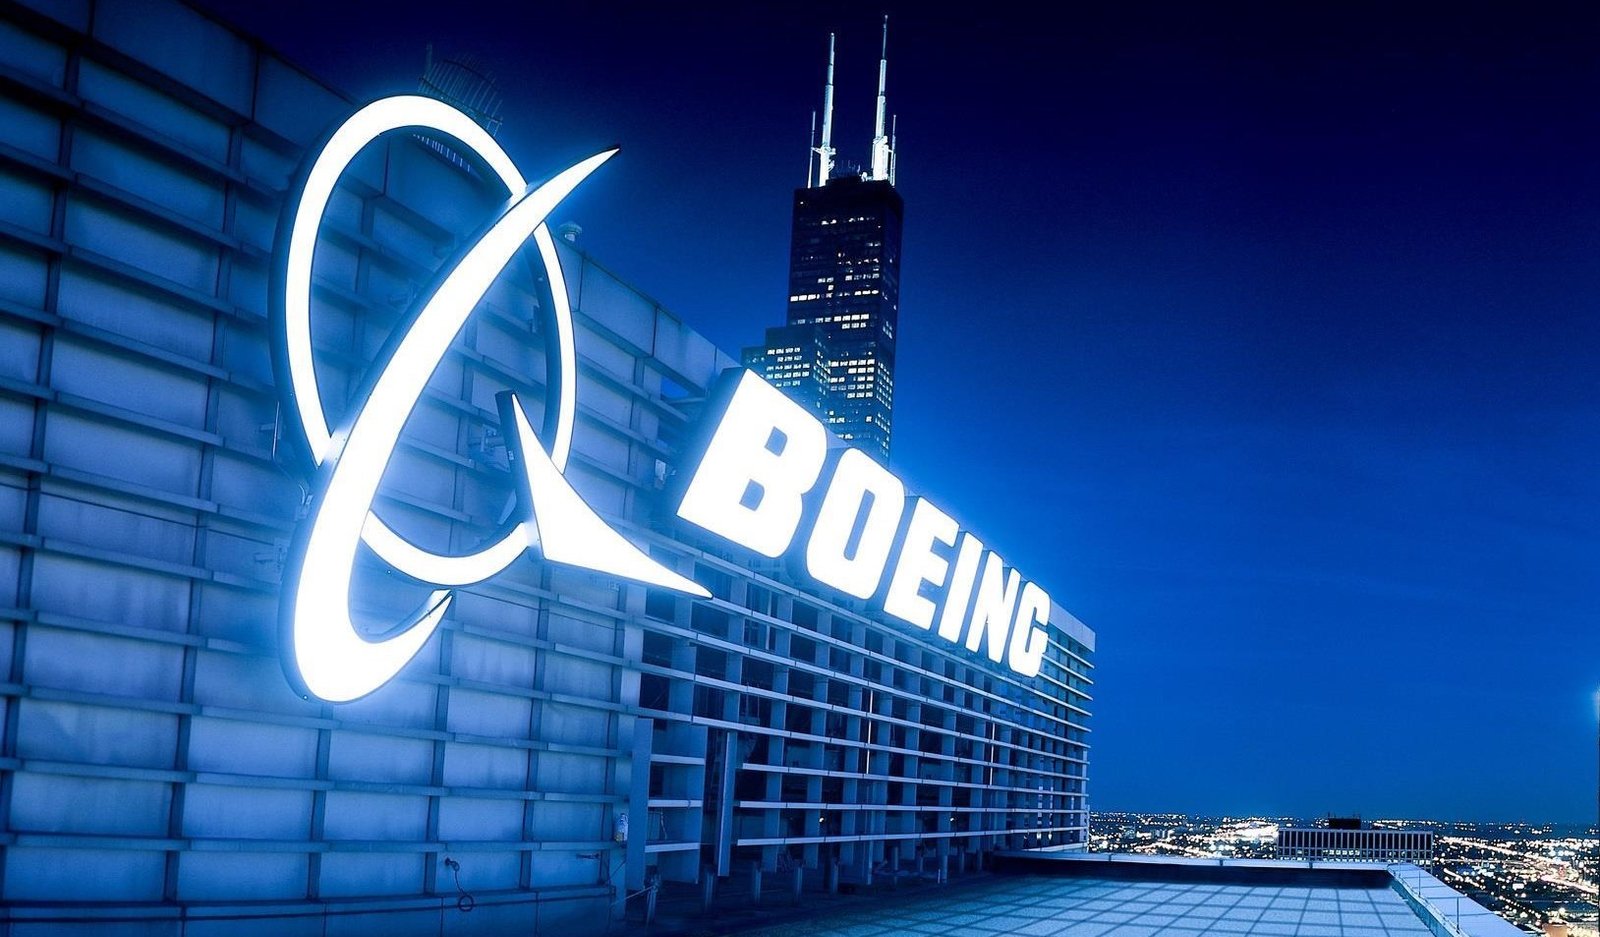 Boeing Marketing Mix